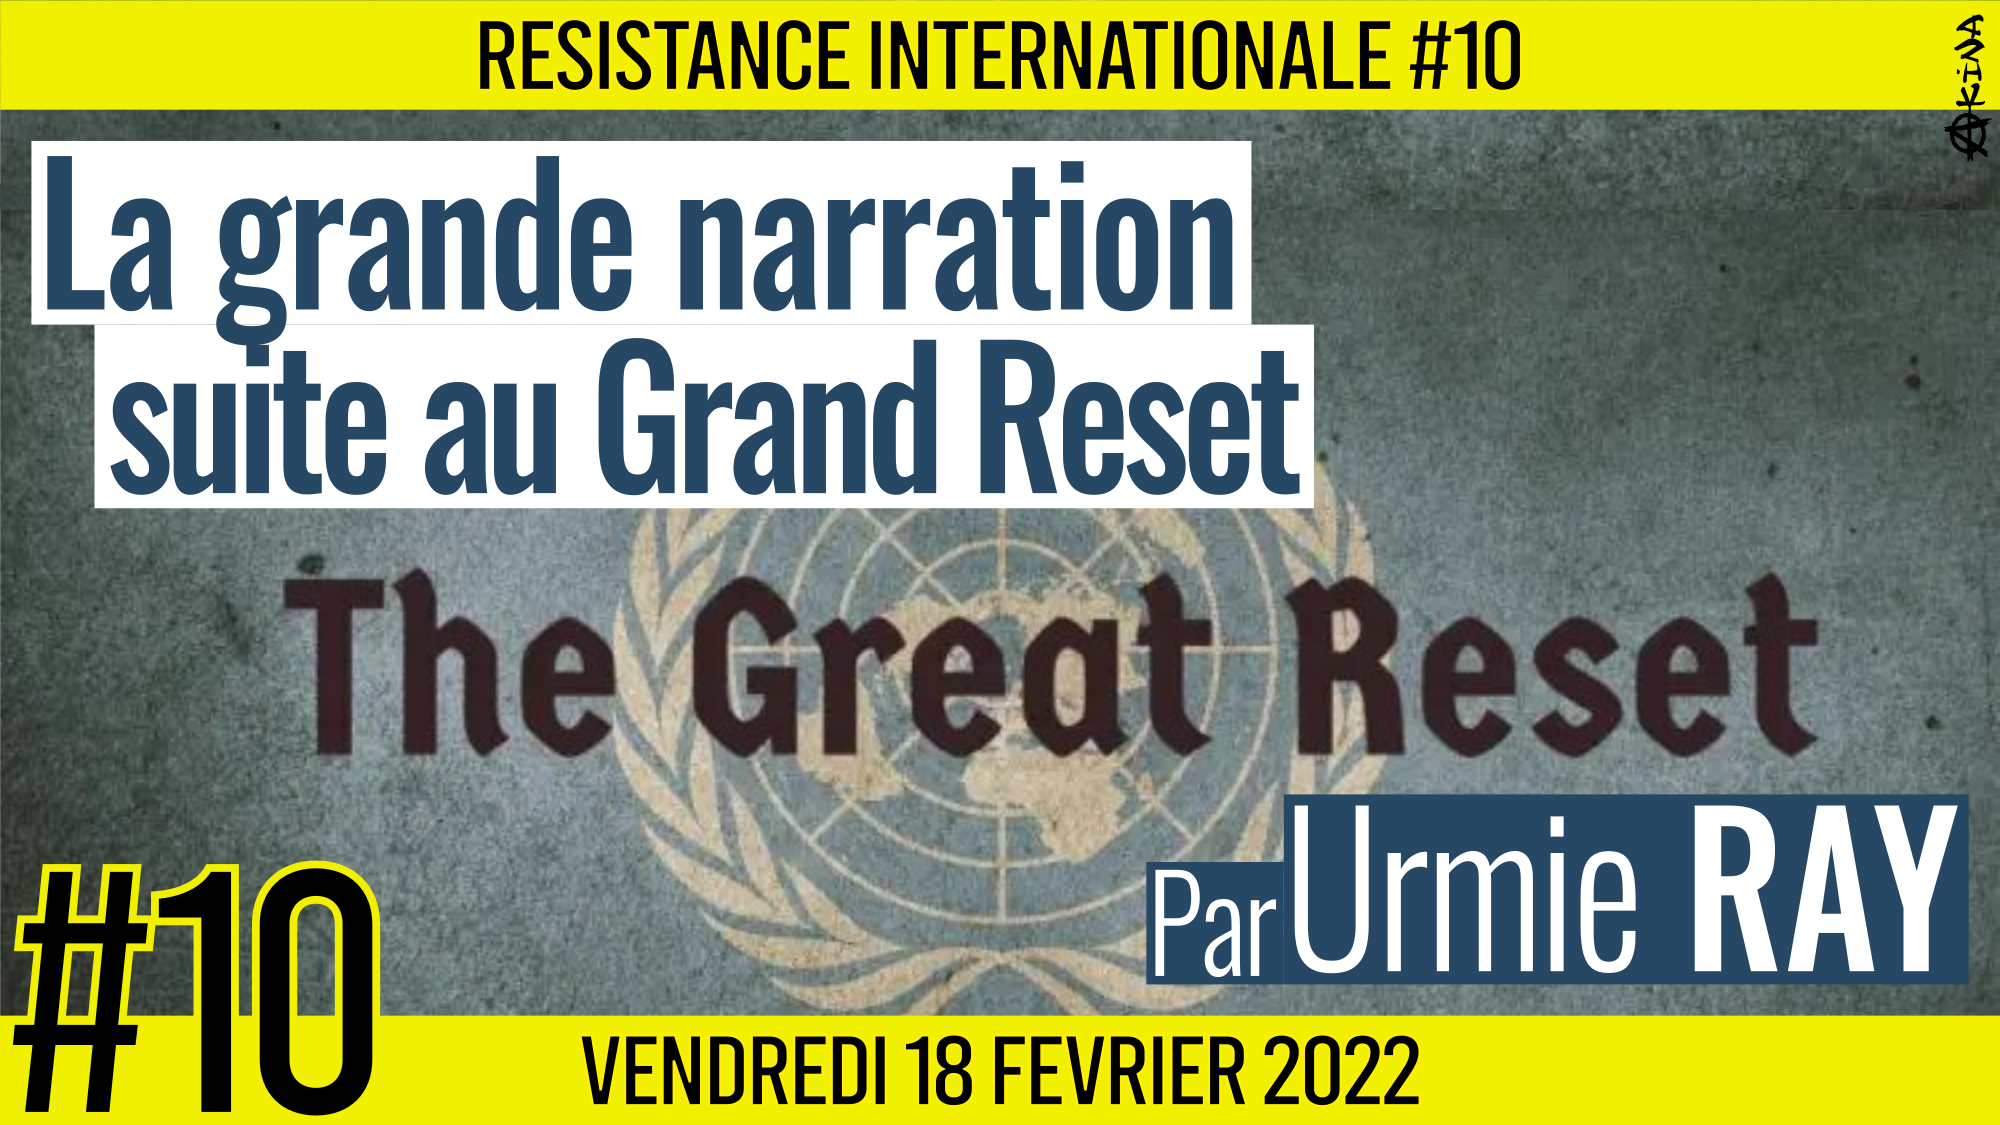 ✊ RÉSISTANCE INTERNATIONALE #10 🗣 Urmie RAY 🎯 La grande narration, suite au grand reset 📆 18-02-2022